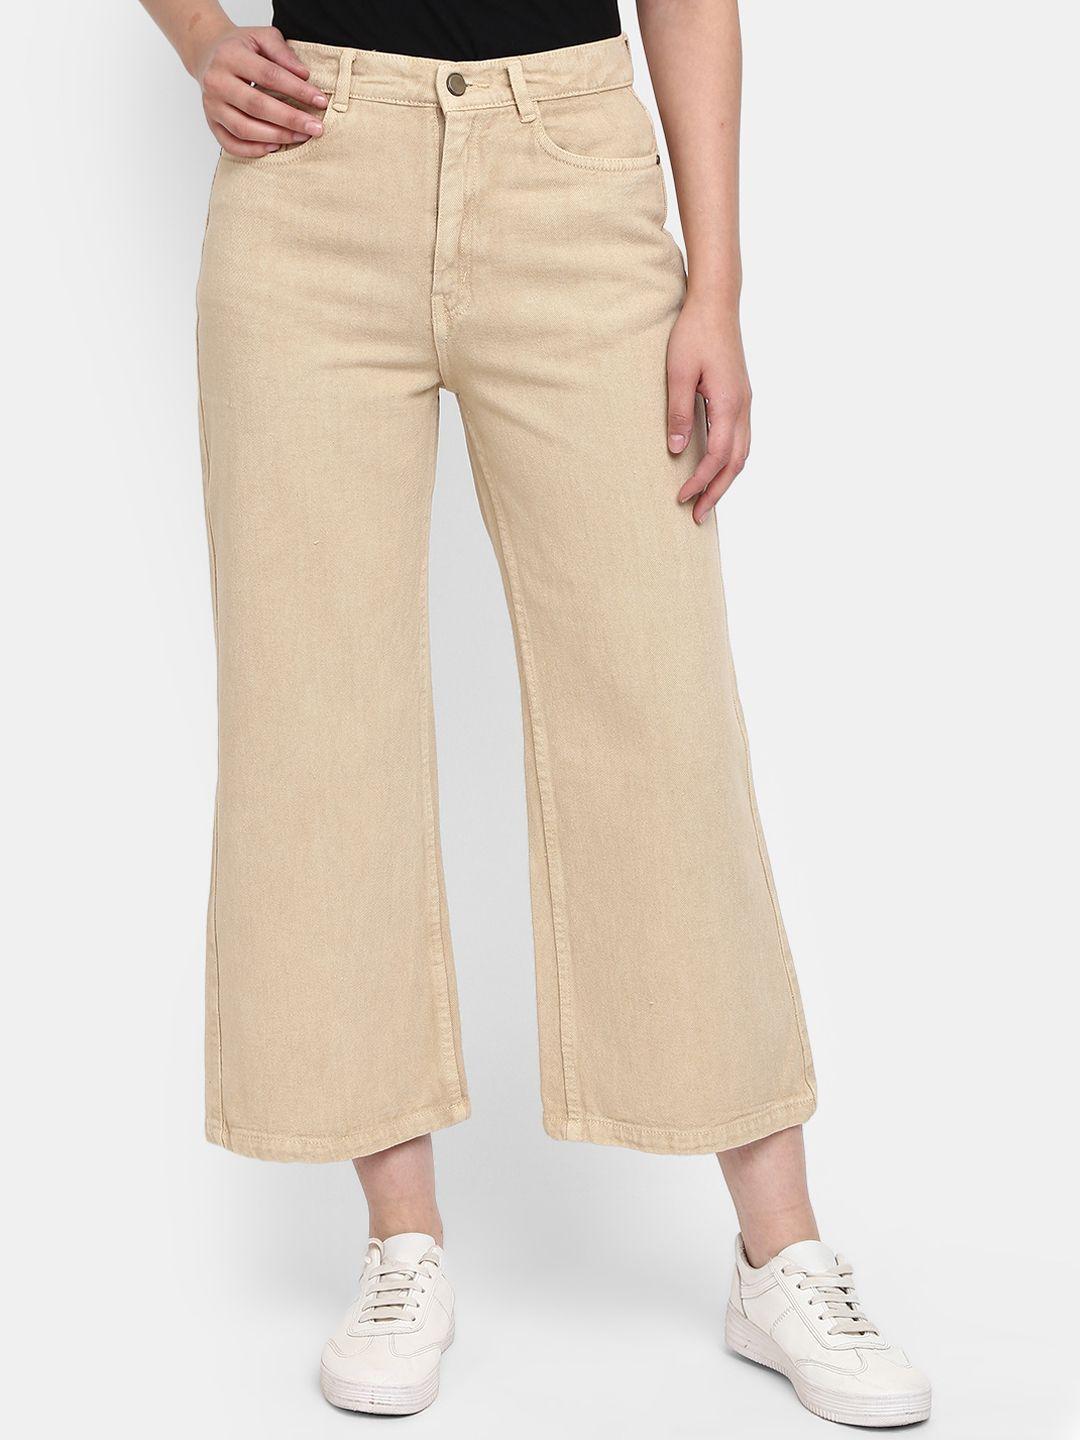 v-mart women solid cotton regular fit jeans